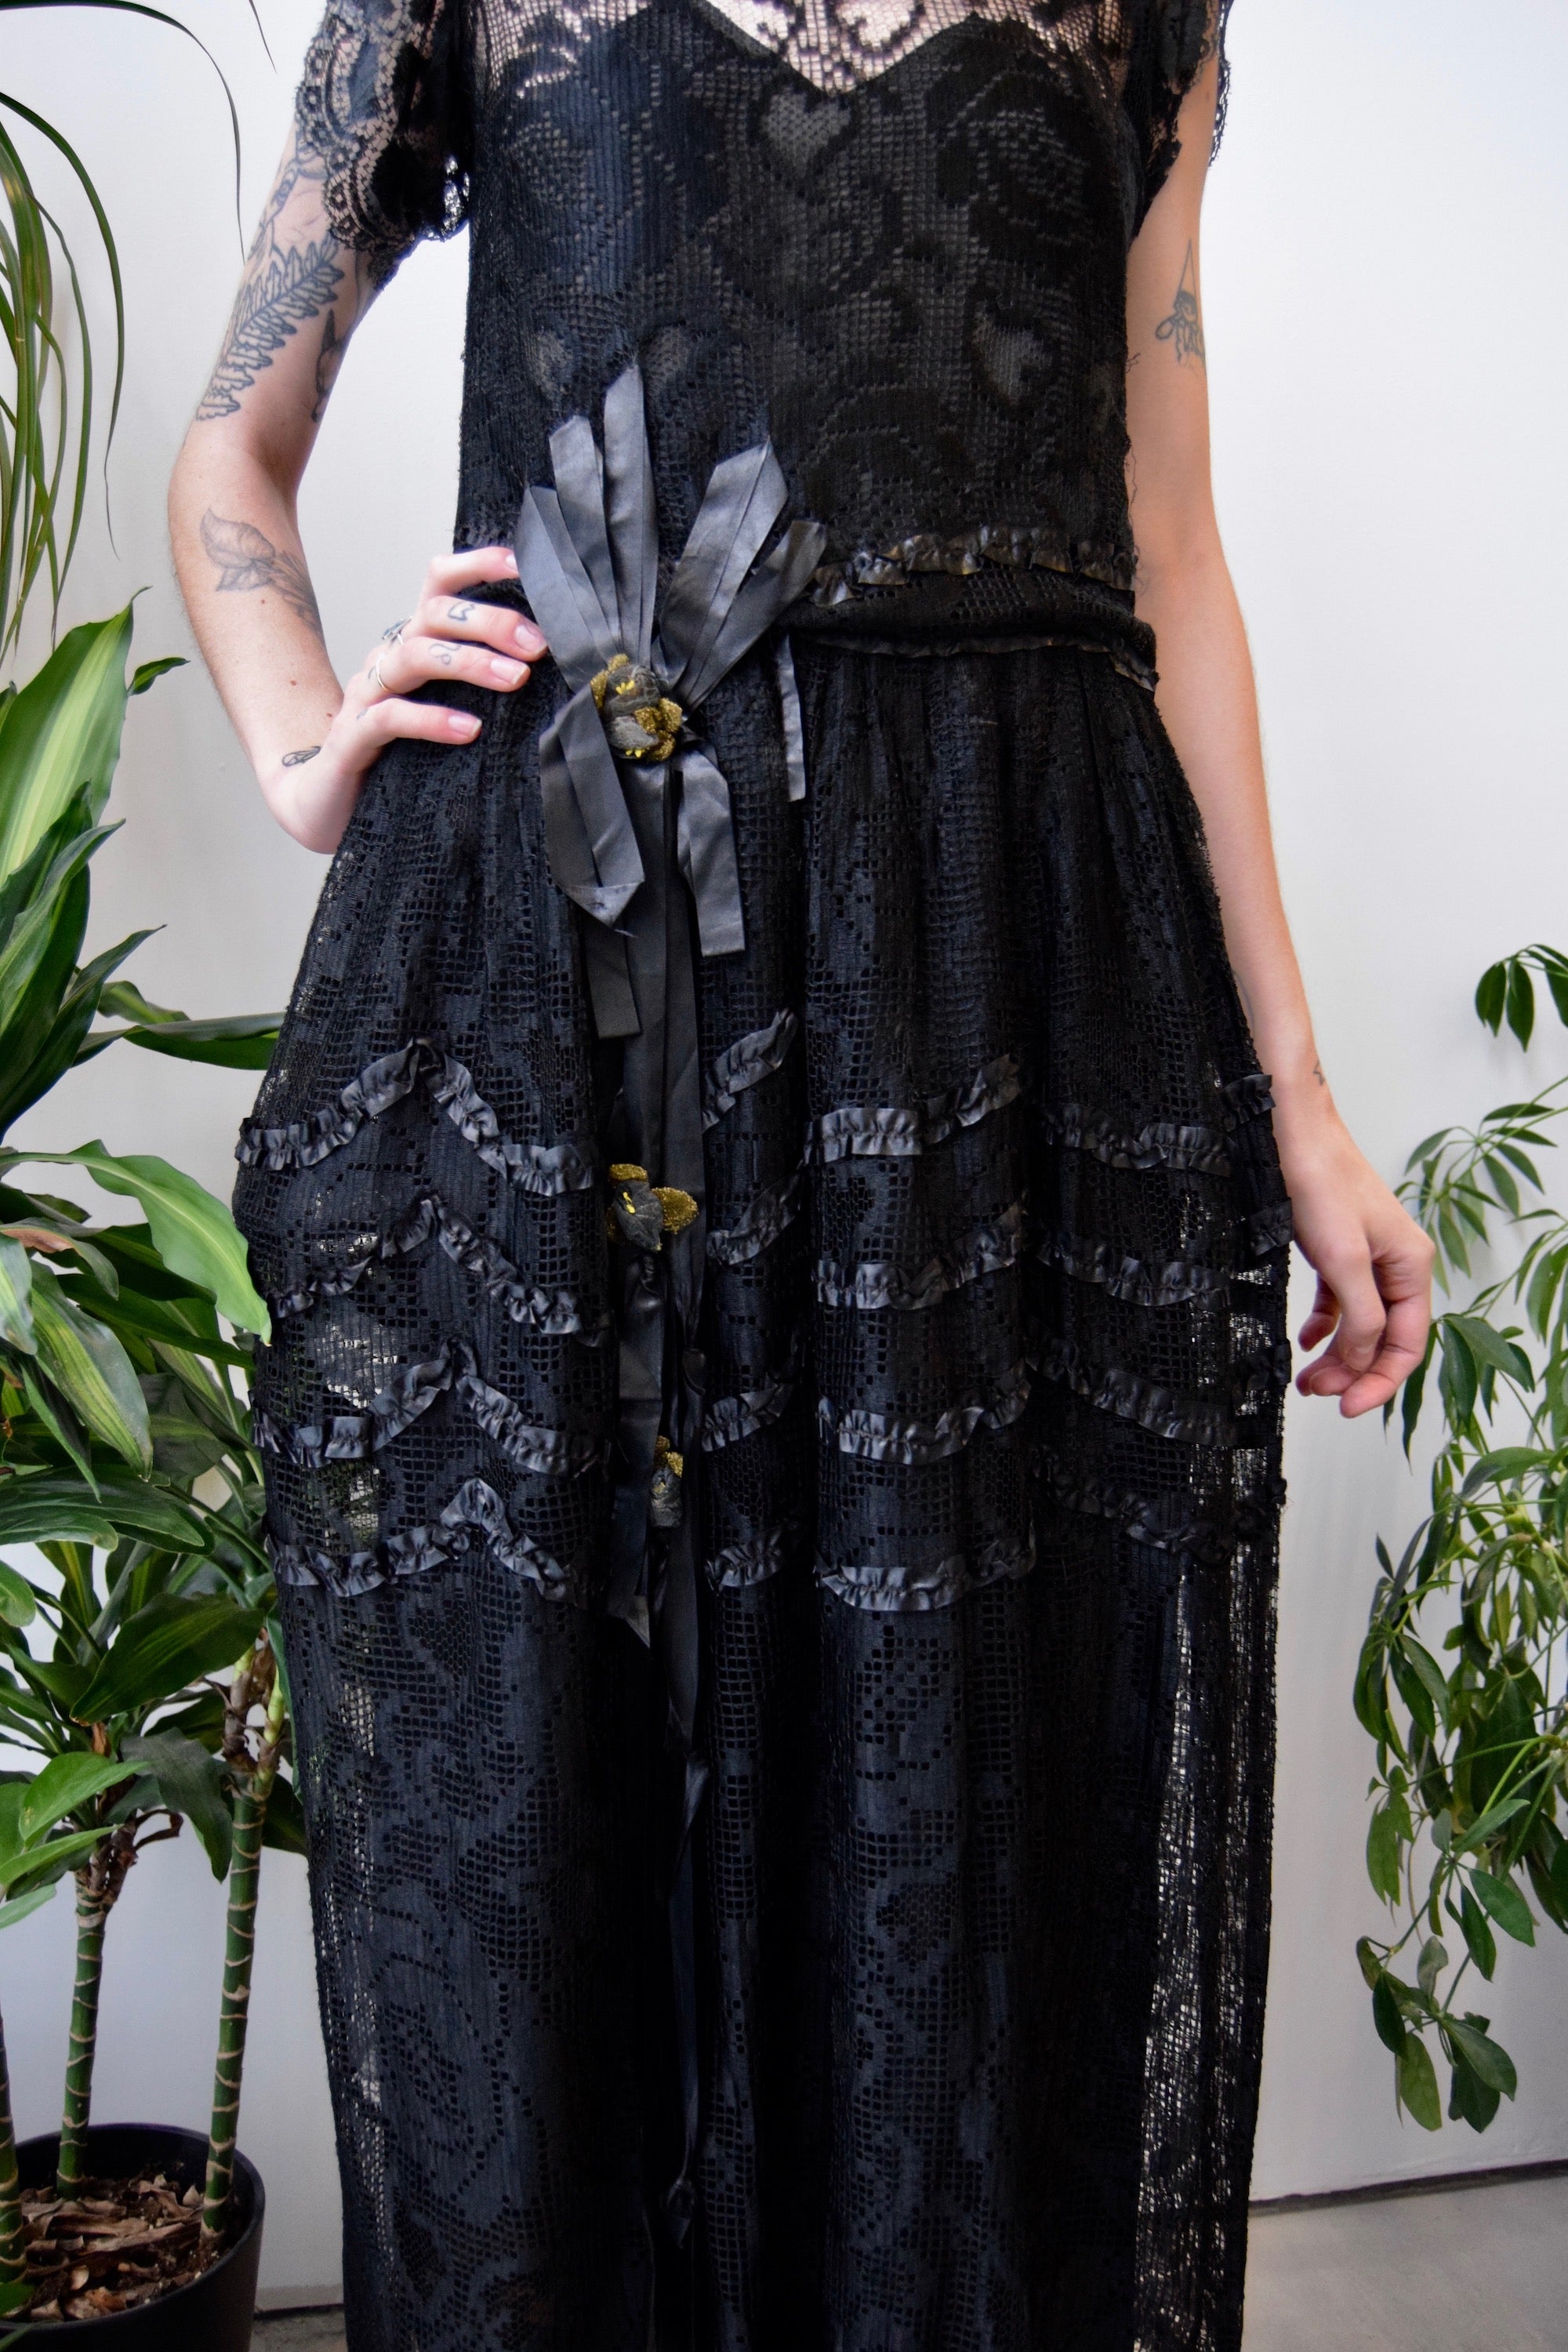 Antique Black Lace Net Dress